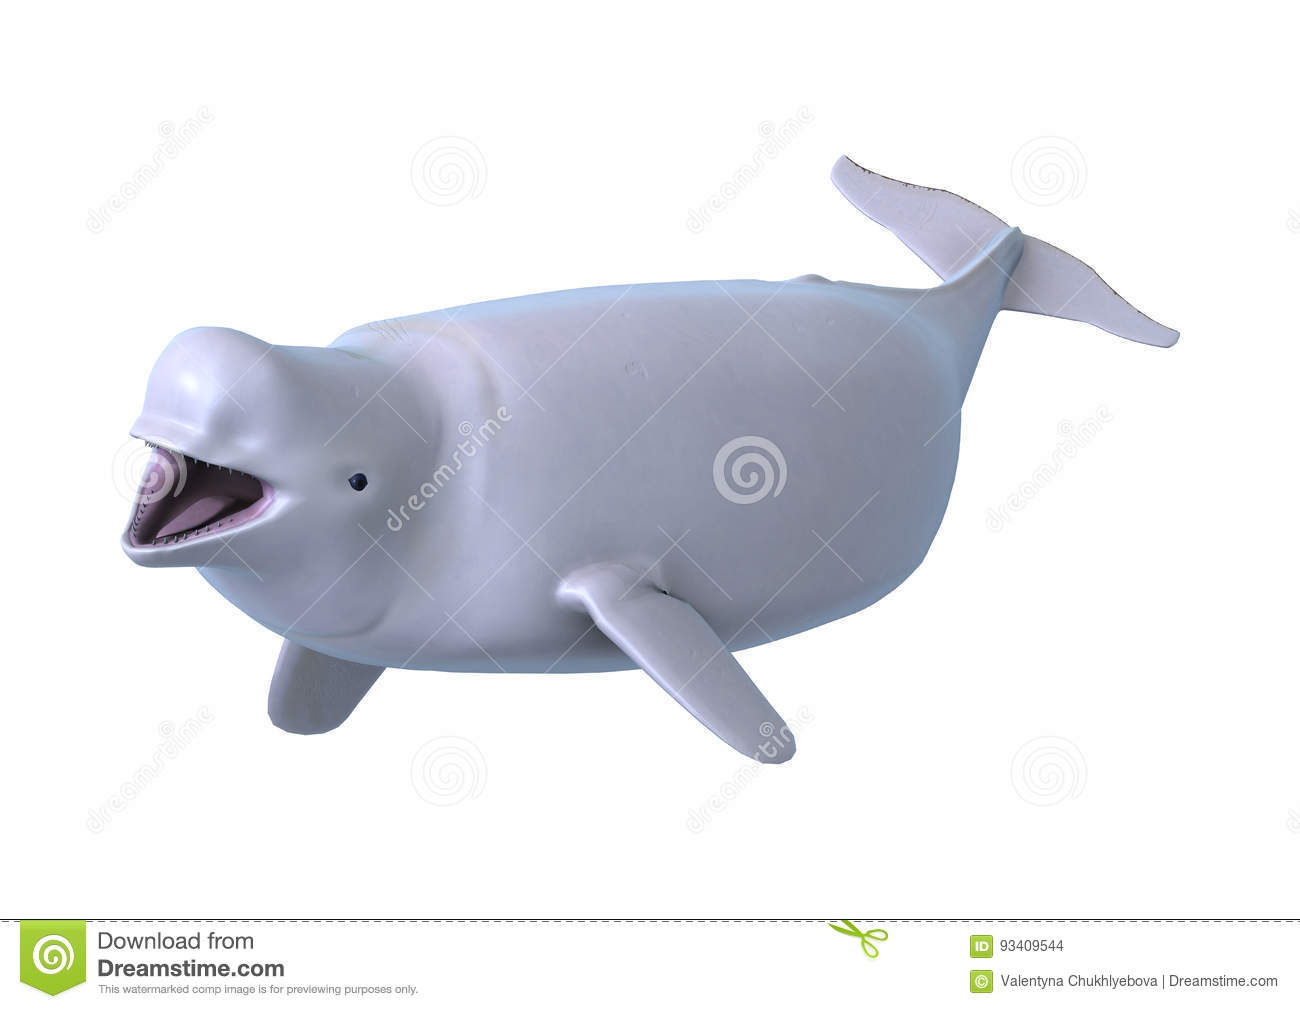 ¿Cómo se llama la ballena blanca?